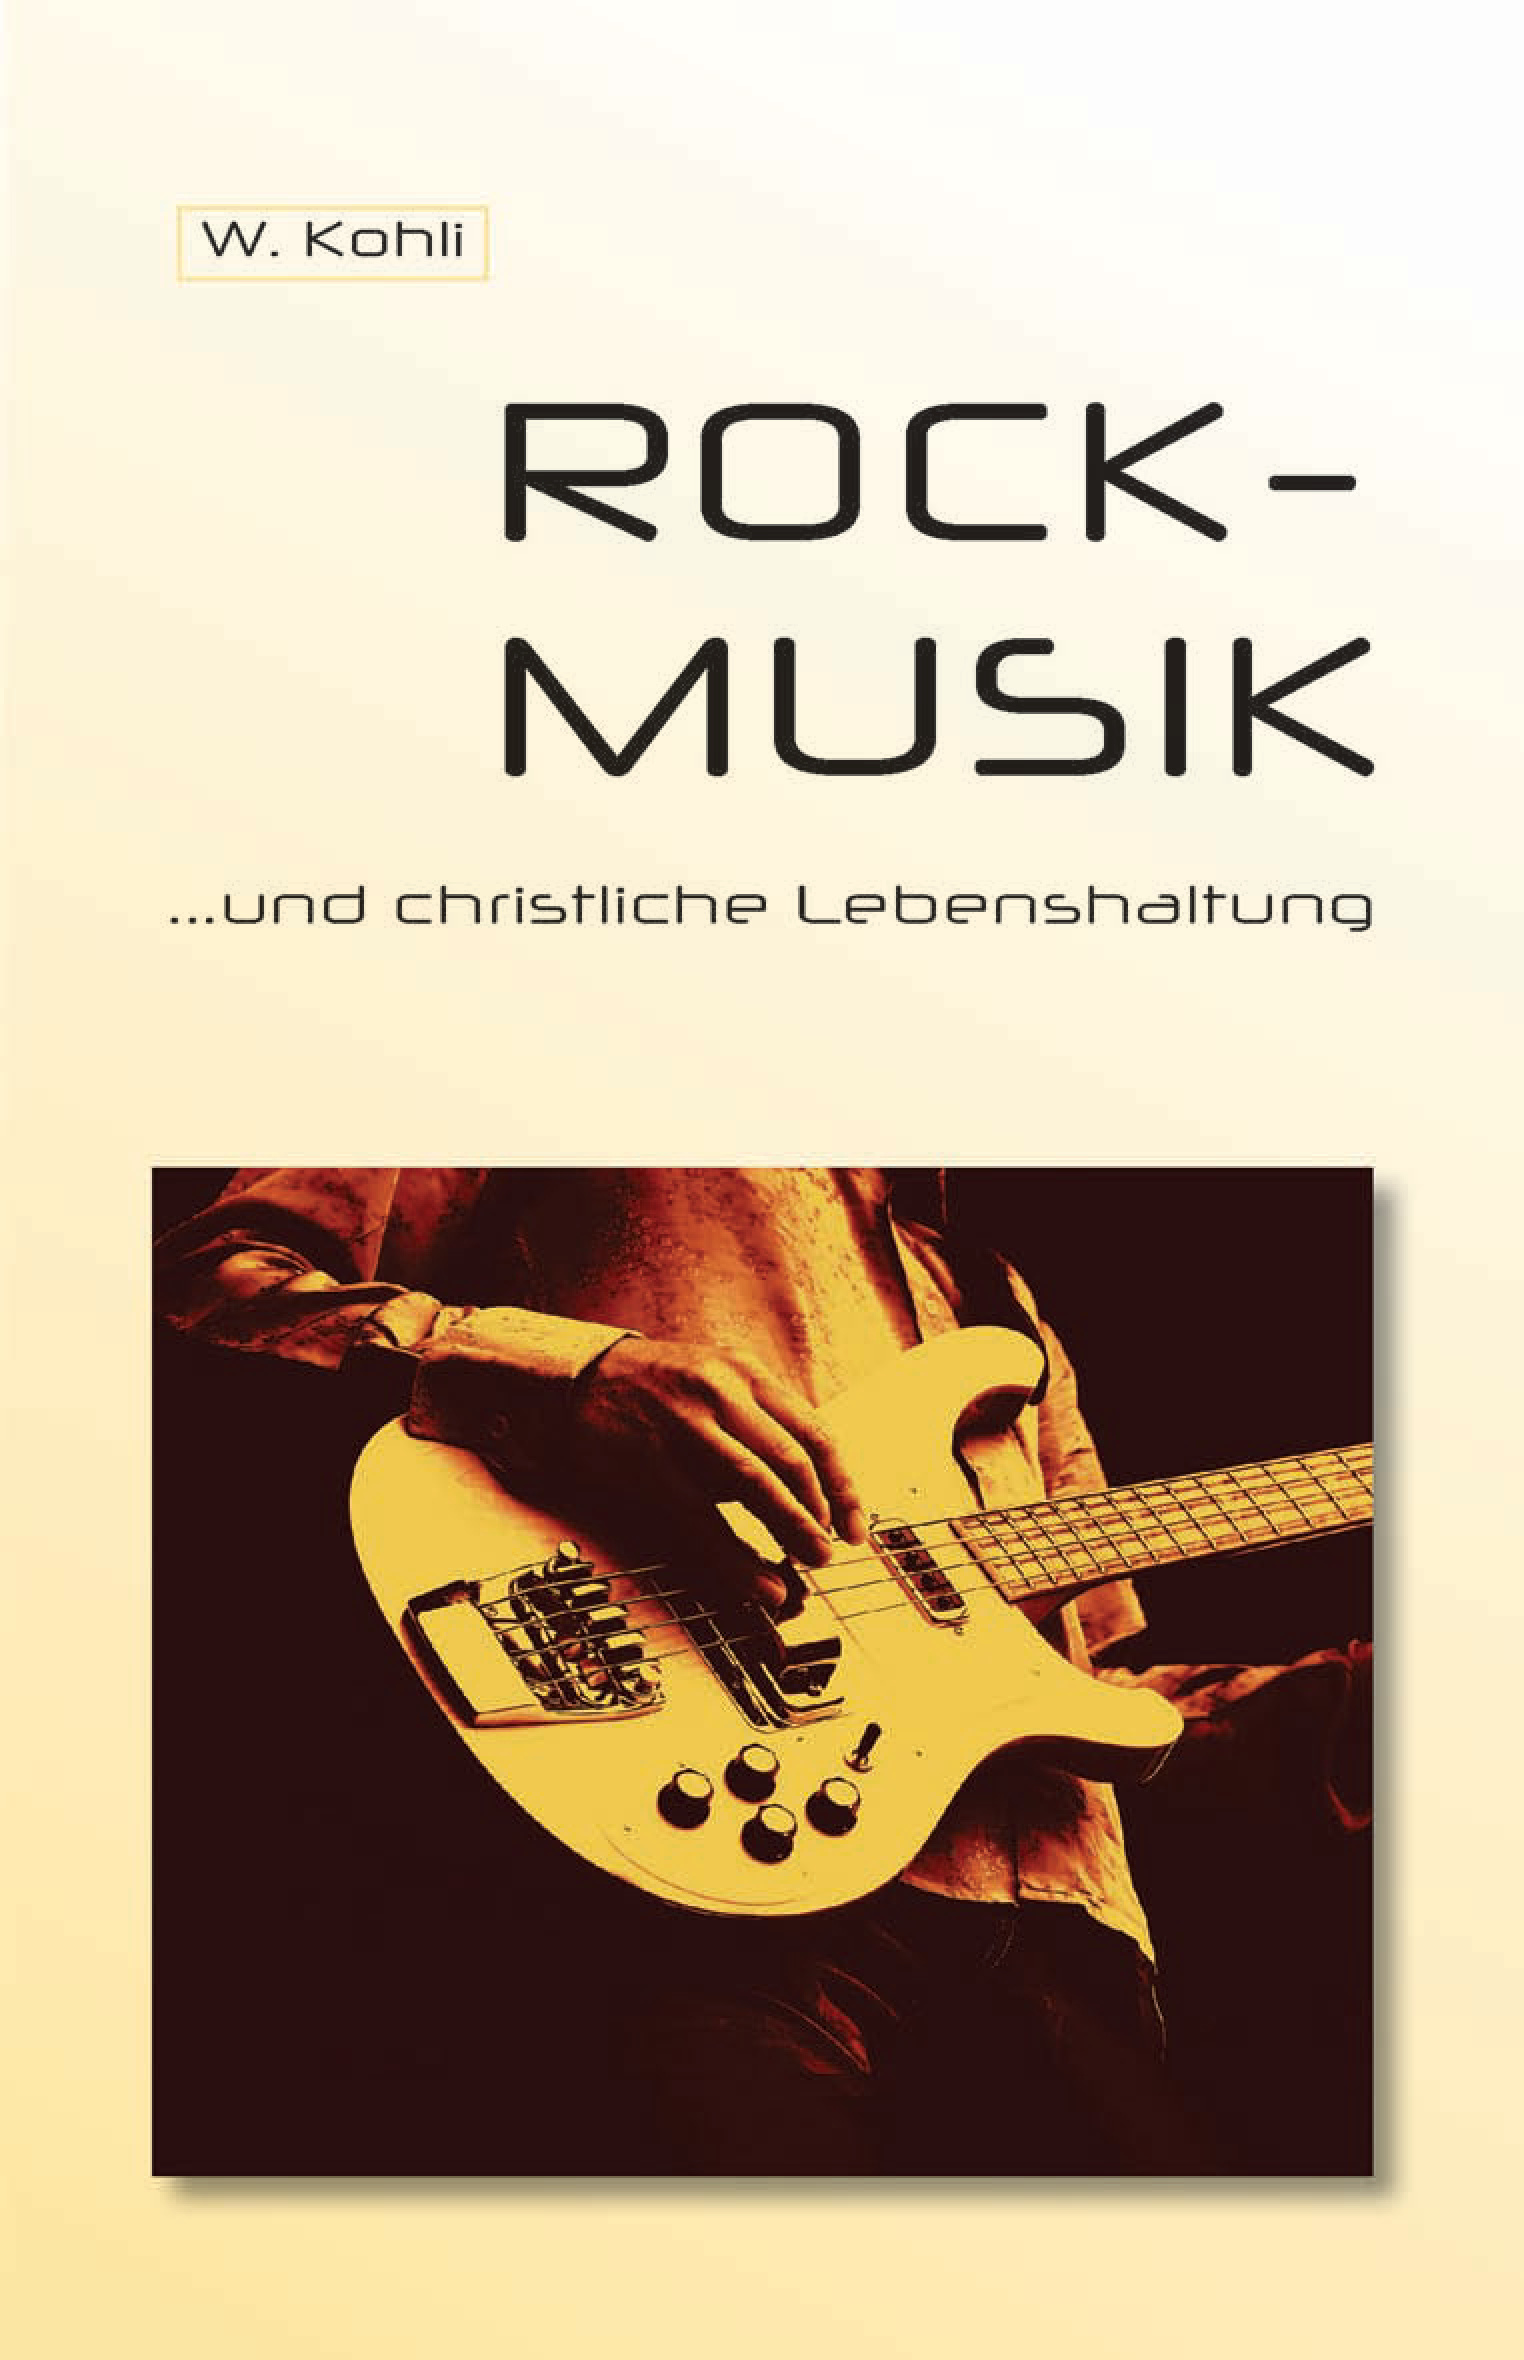 Rock-Musik und christliche Lebenshaltung - PDF